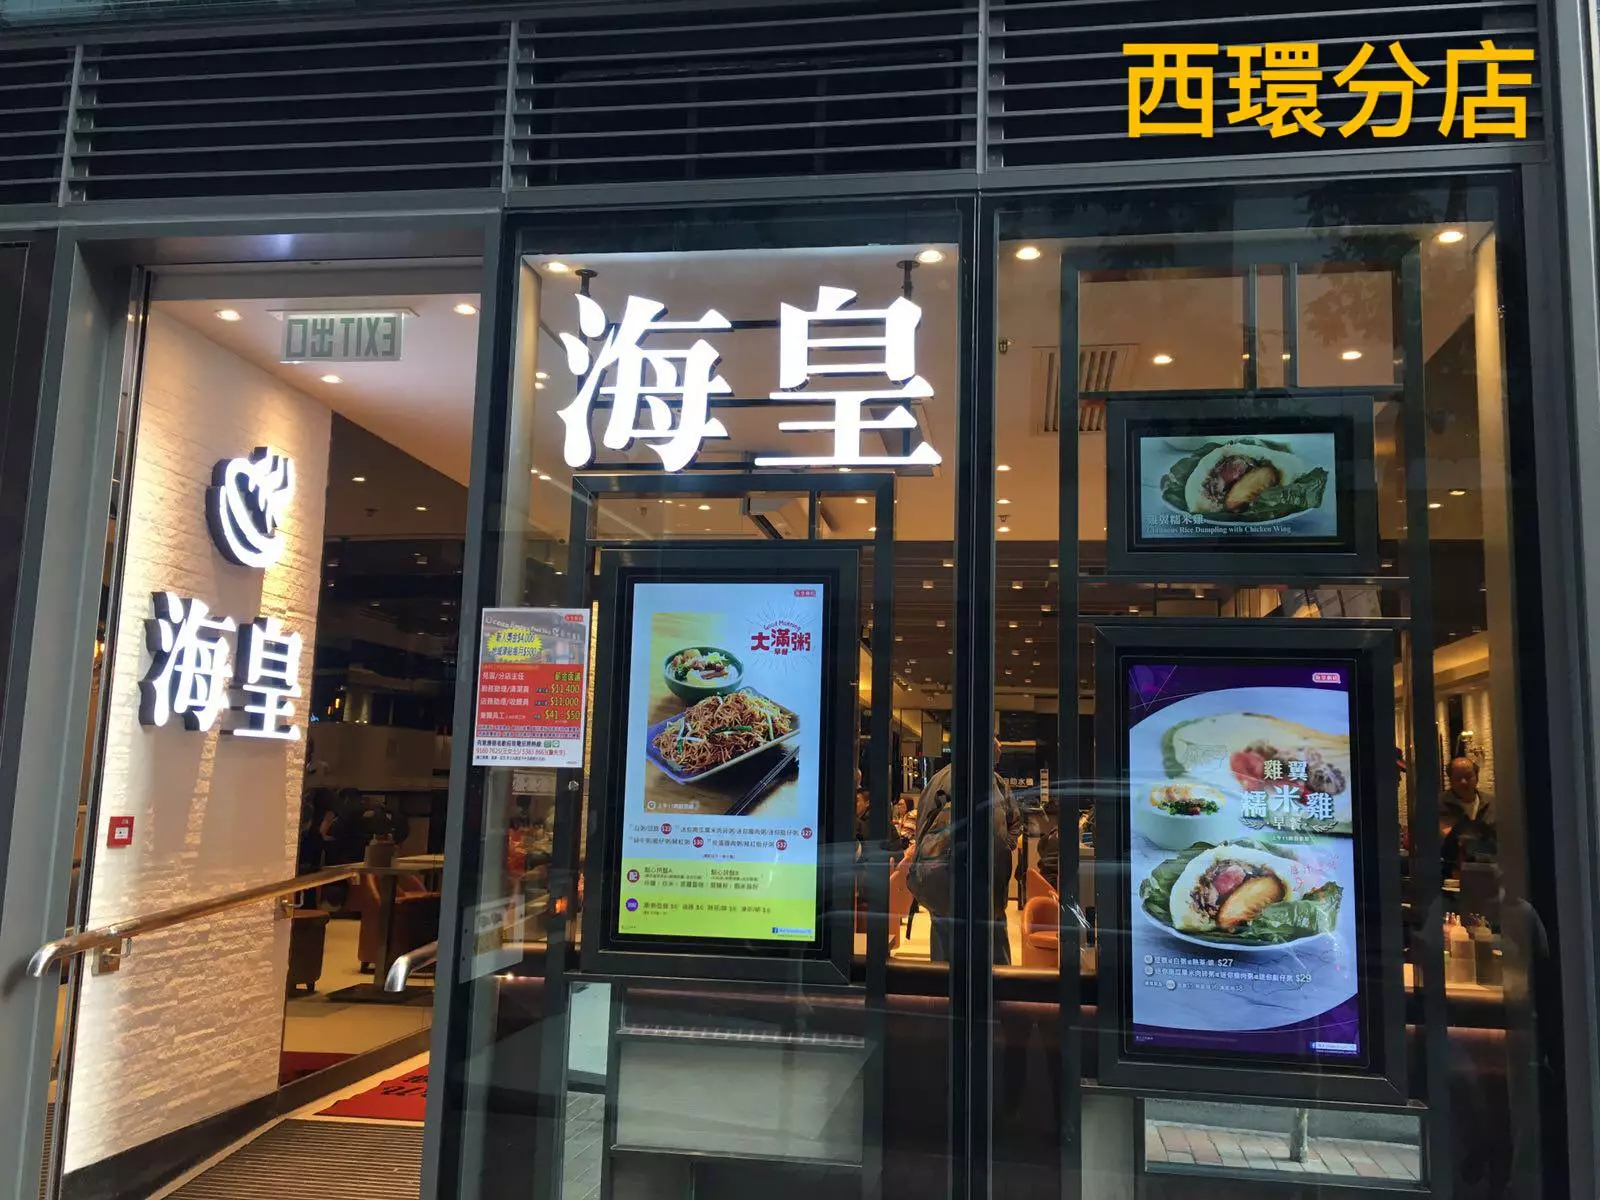 海皇粥店 (莊士敦道)的餐牌 – 香港灣仔的港式粥品 | OpenRice 香港開飯喇